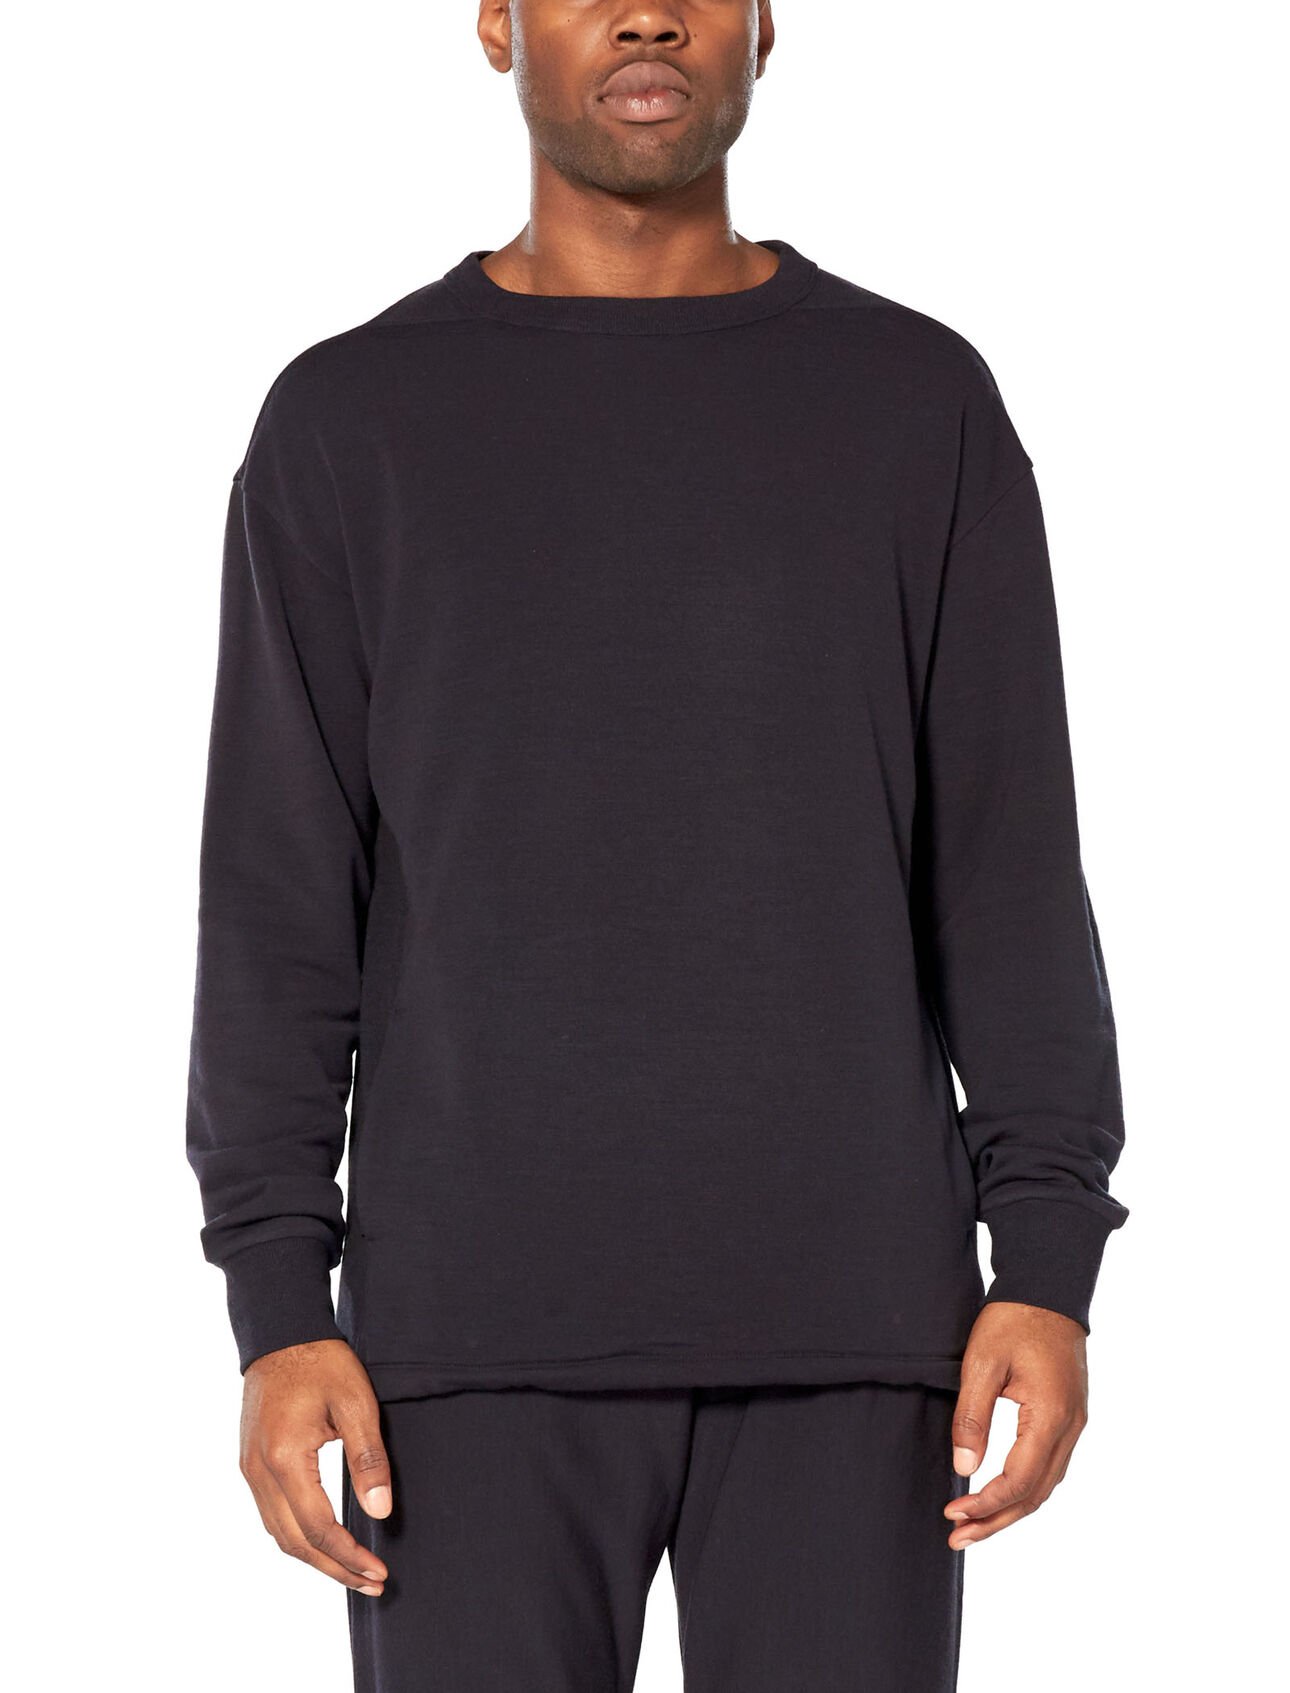 RealFleece® Merino Long Sleeve Crewe Sweatshirt